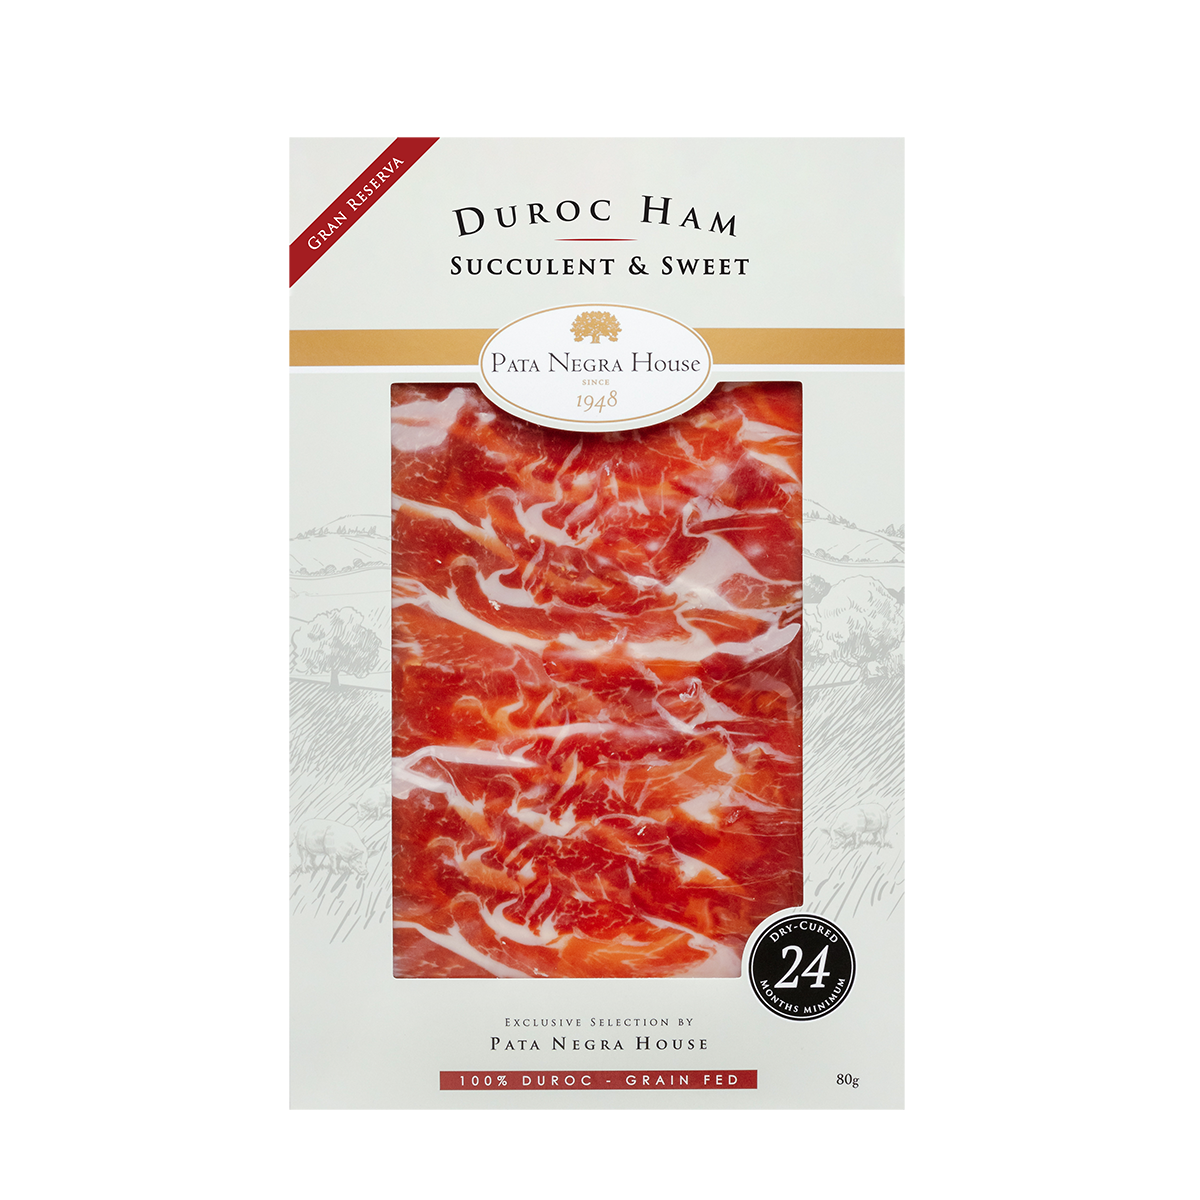 100% Duroc Ham (24 months) 